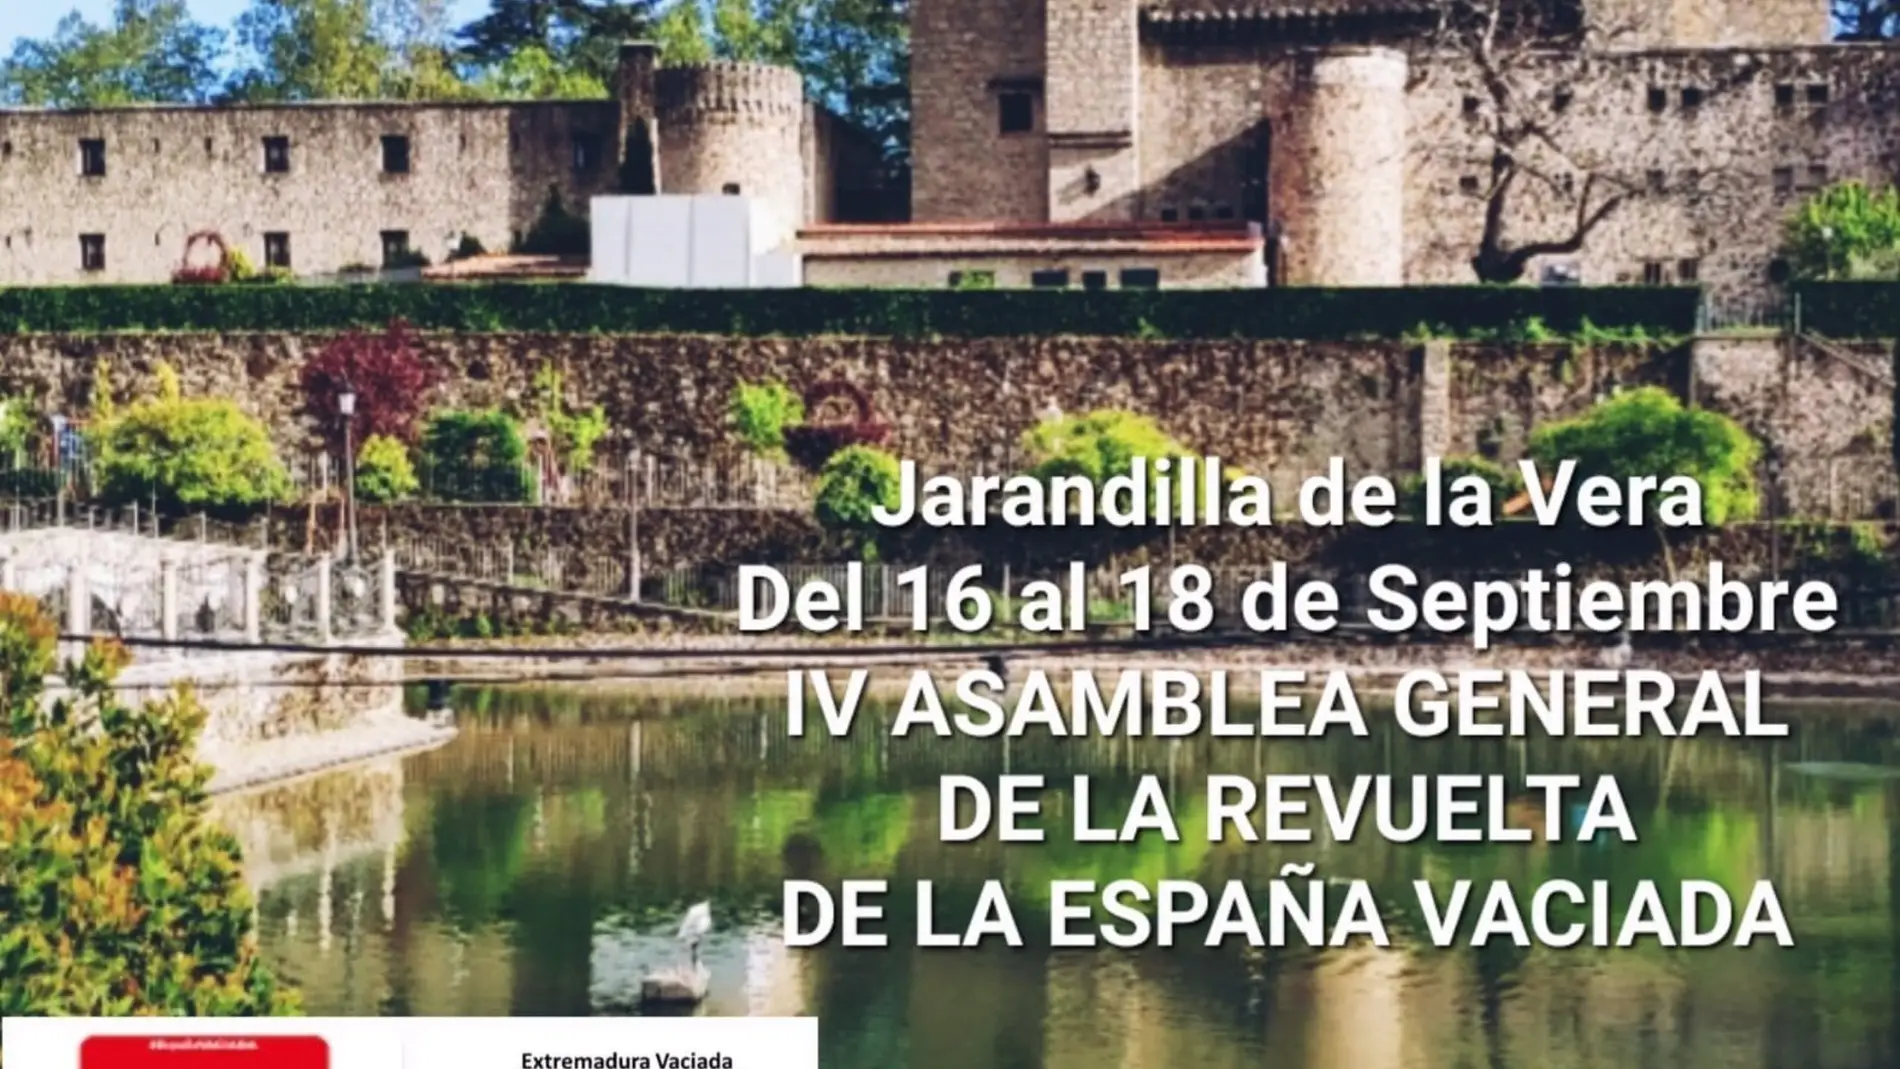 La España Vaciada se "conjura" en Jarandilla de La Vera